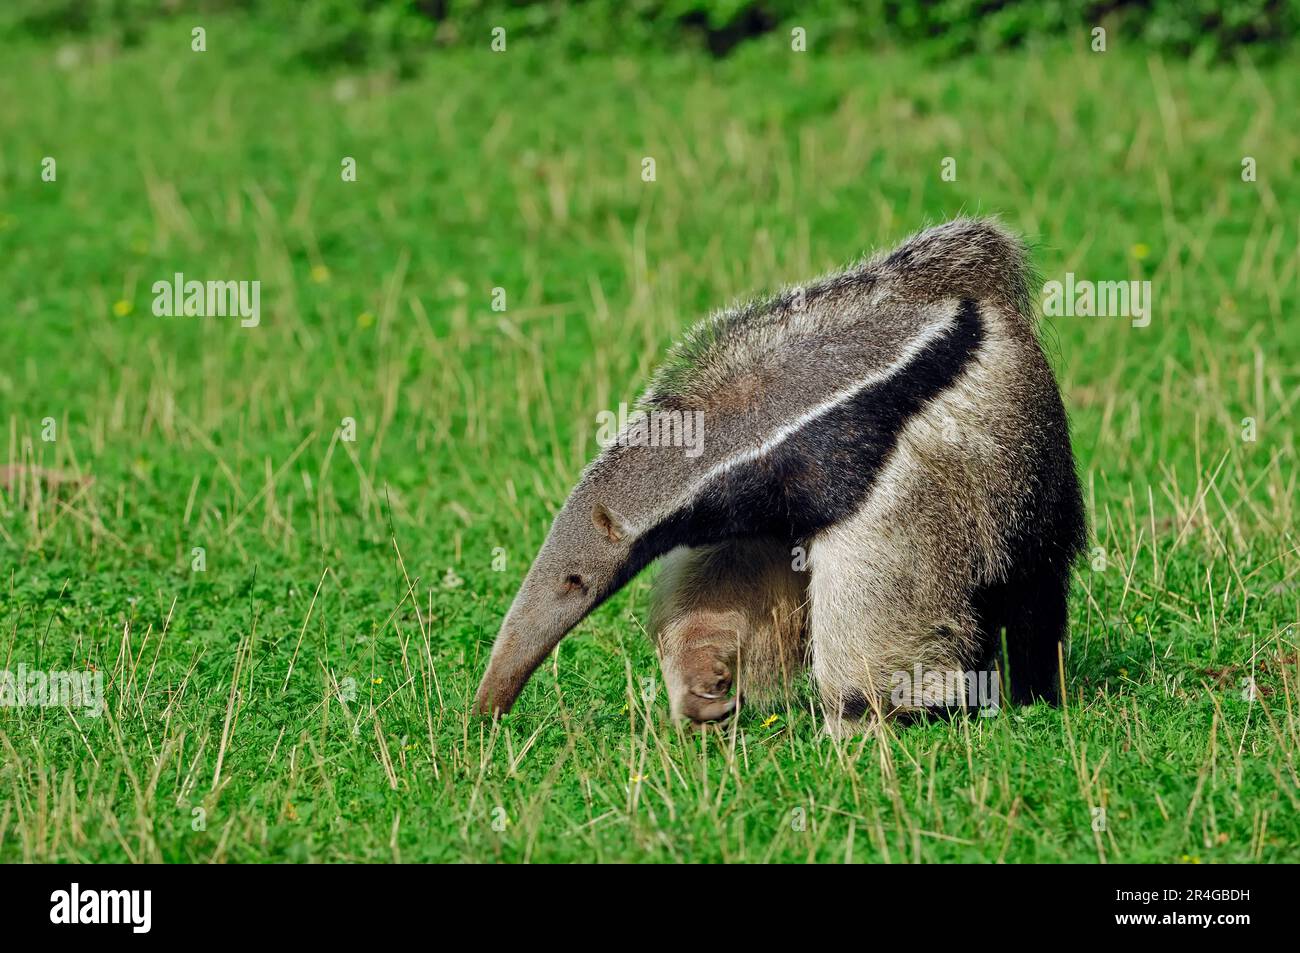 Giant anteater (Myrmecophaga tridactyla) Stock Photo